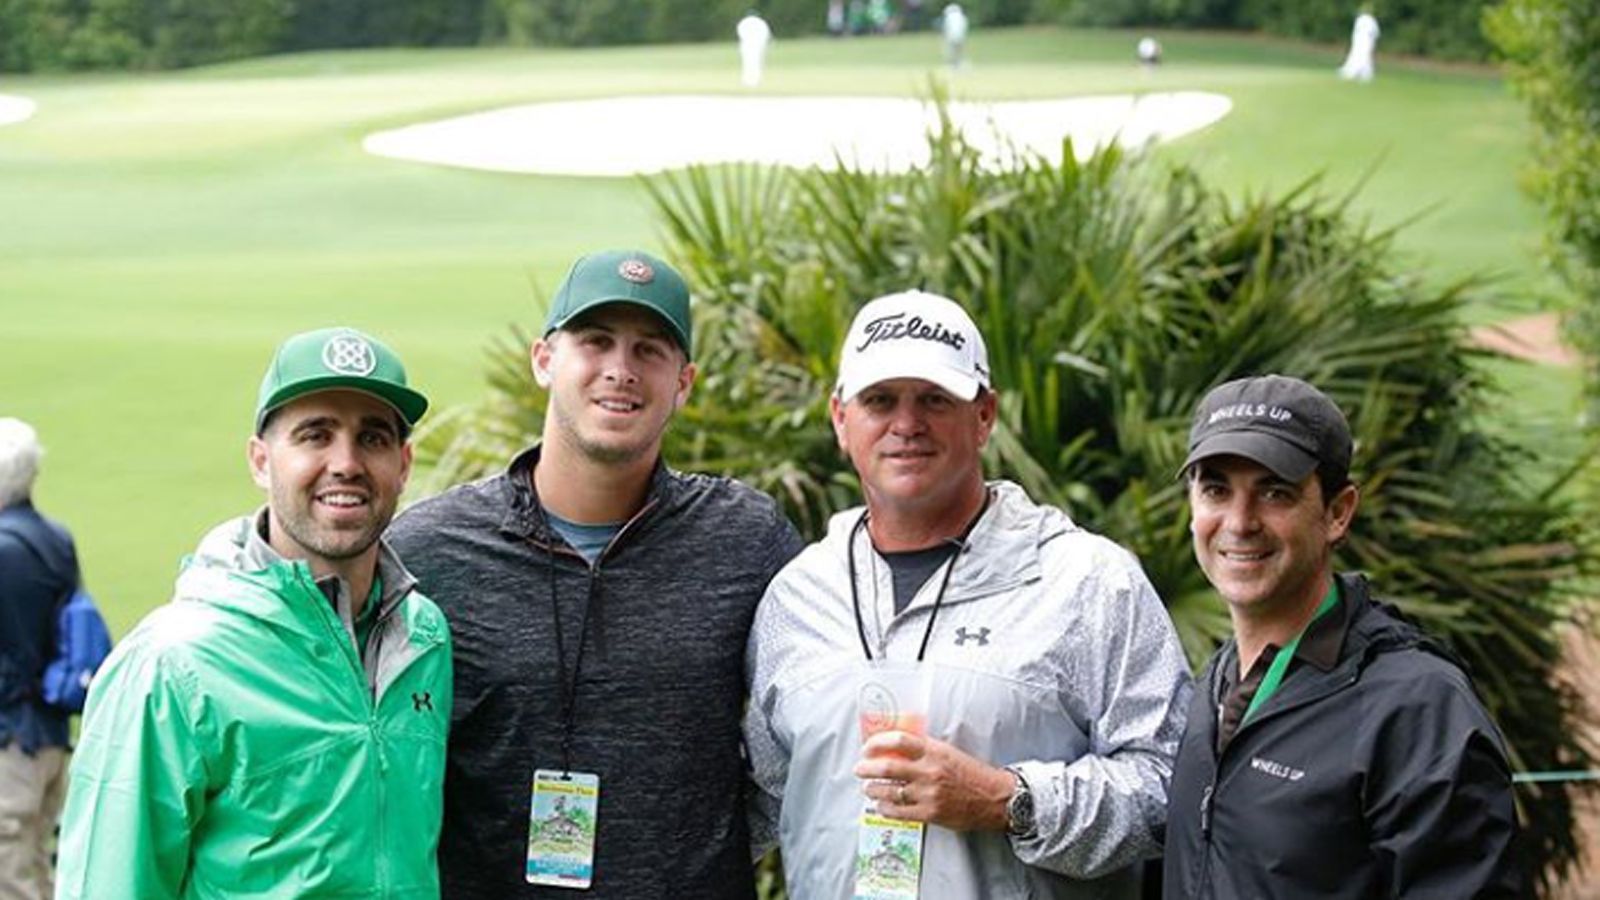 
                <strong>Goff im Golfer-Paradies</strong><br>
                Jared Goff wagte einen Sprung ins Grüne und schaute beim exklusivsten Golfturnier der Welt in Augusta National vorbei. Ob sich der Hobbygolfer bei Tiger Woods und Co. etwas abschauen konnte?
              